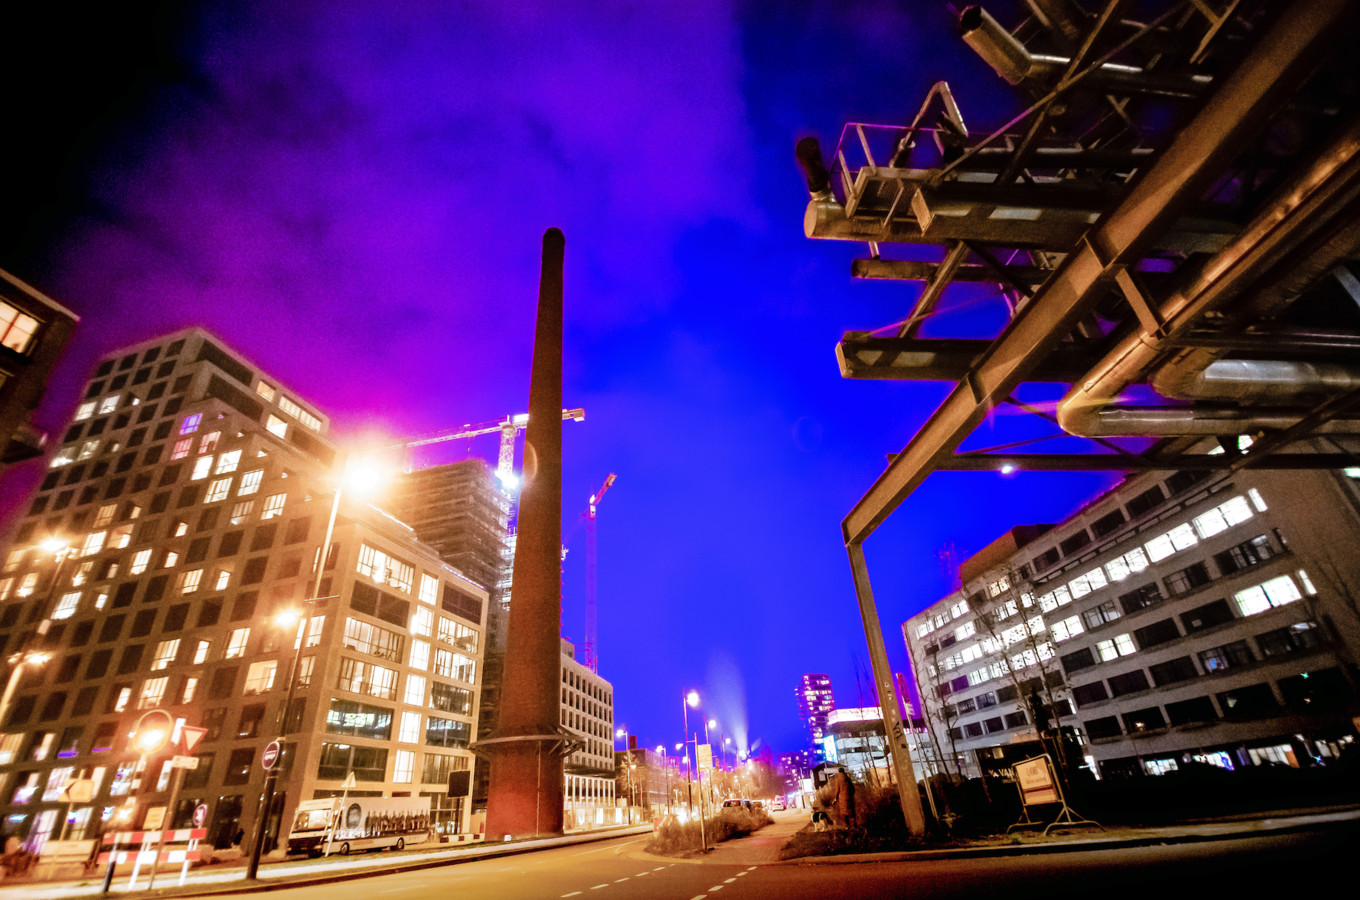 Blauw licht in Eindhoven.